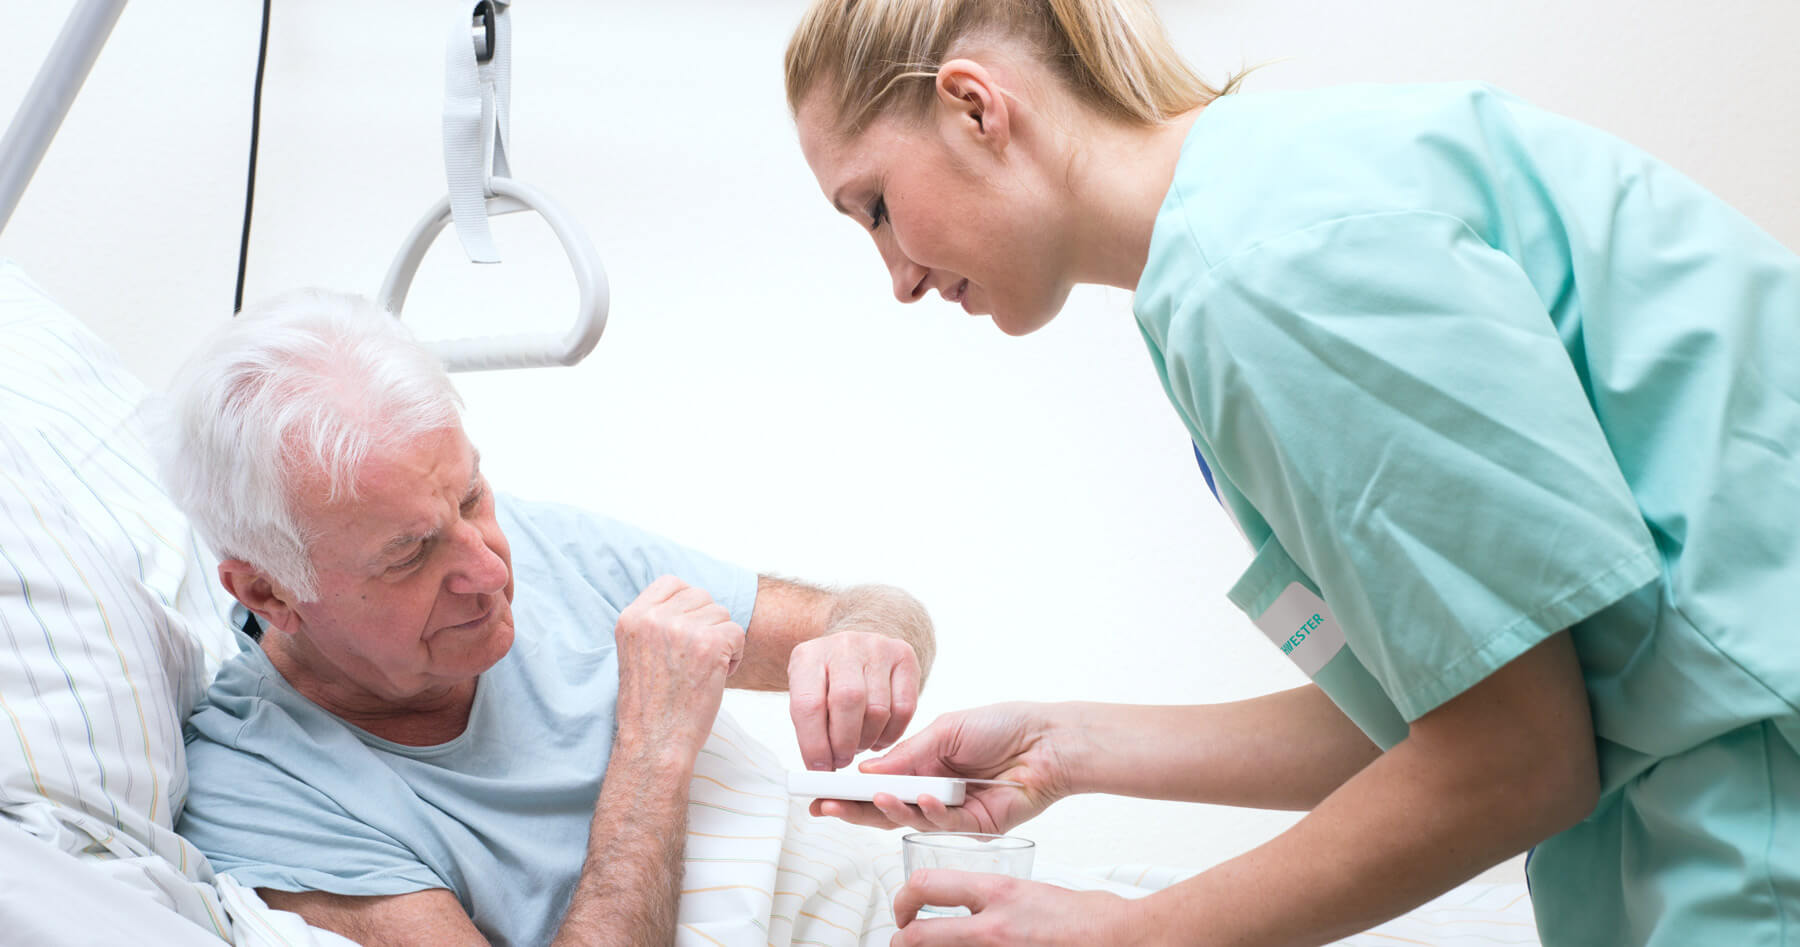 Medikamentenvergabe an einen älteren Herren im Krankenbett